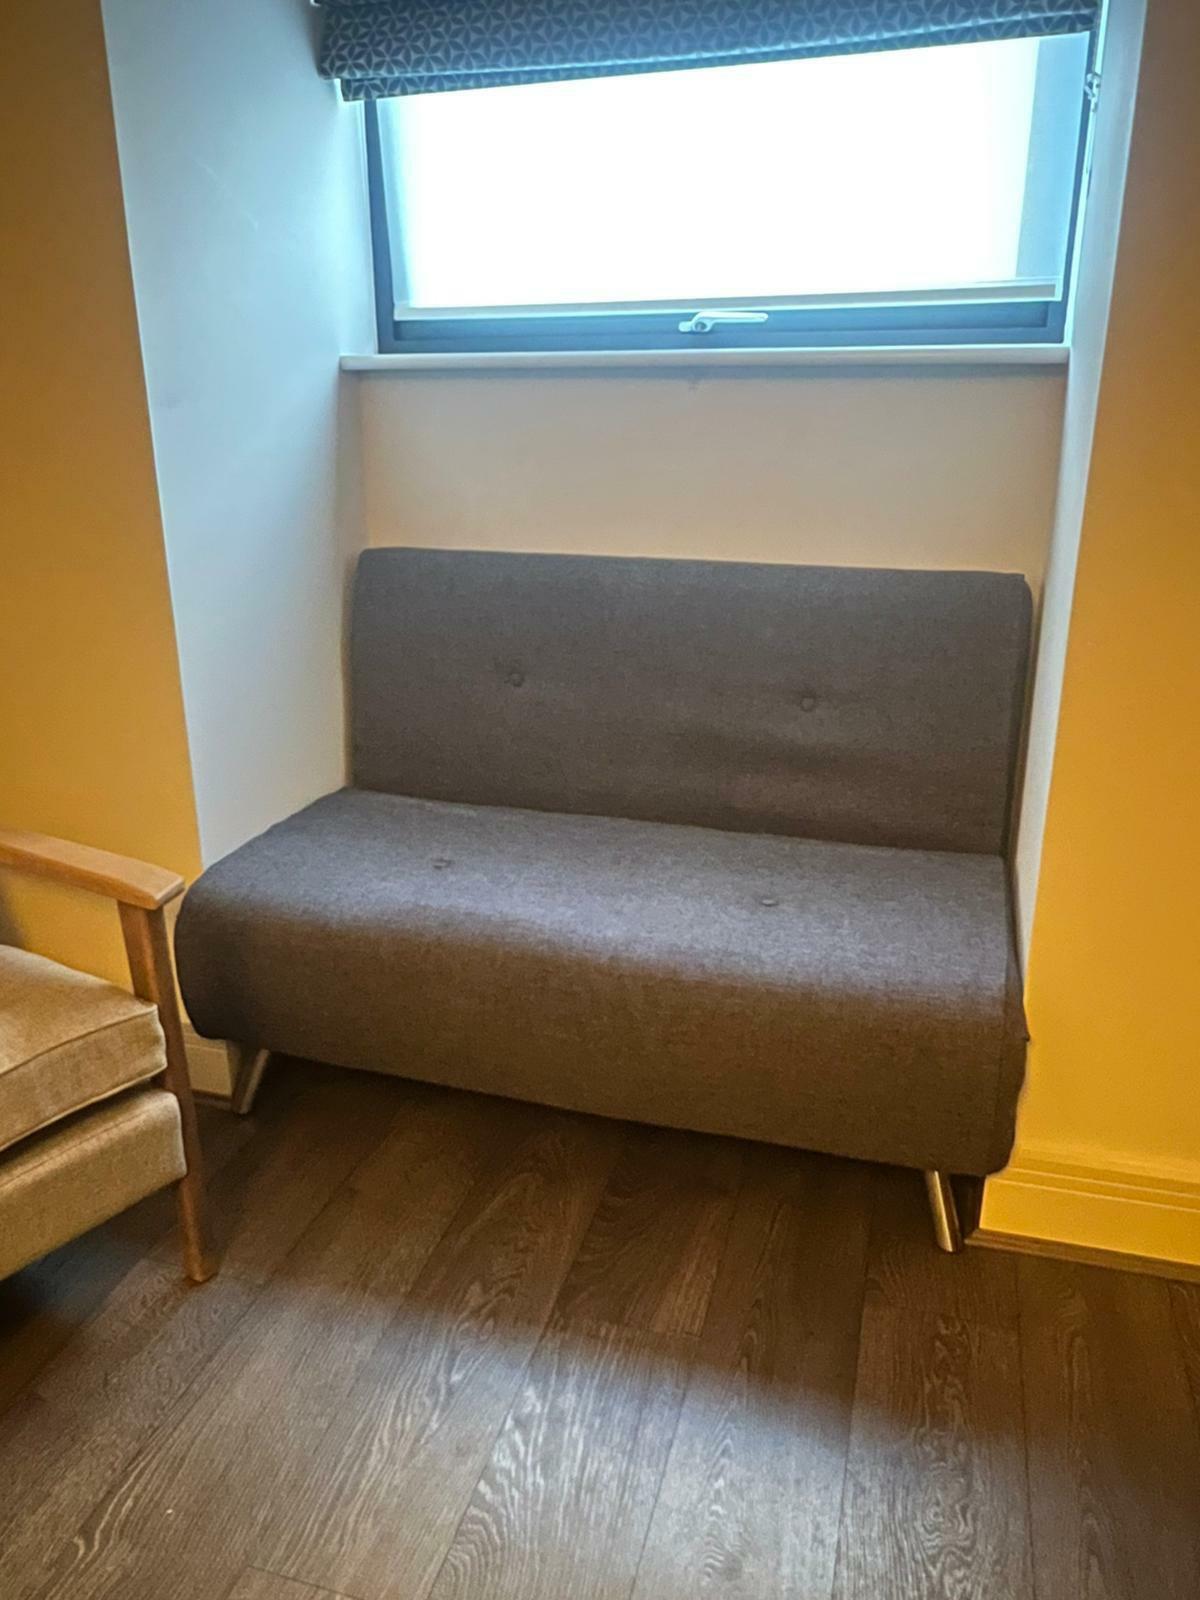 J’ai vendu mon canapé sur Facebook. L’acheteur m’a envoyé cette photo.